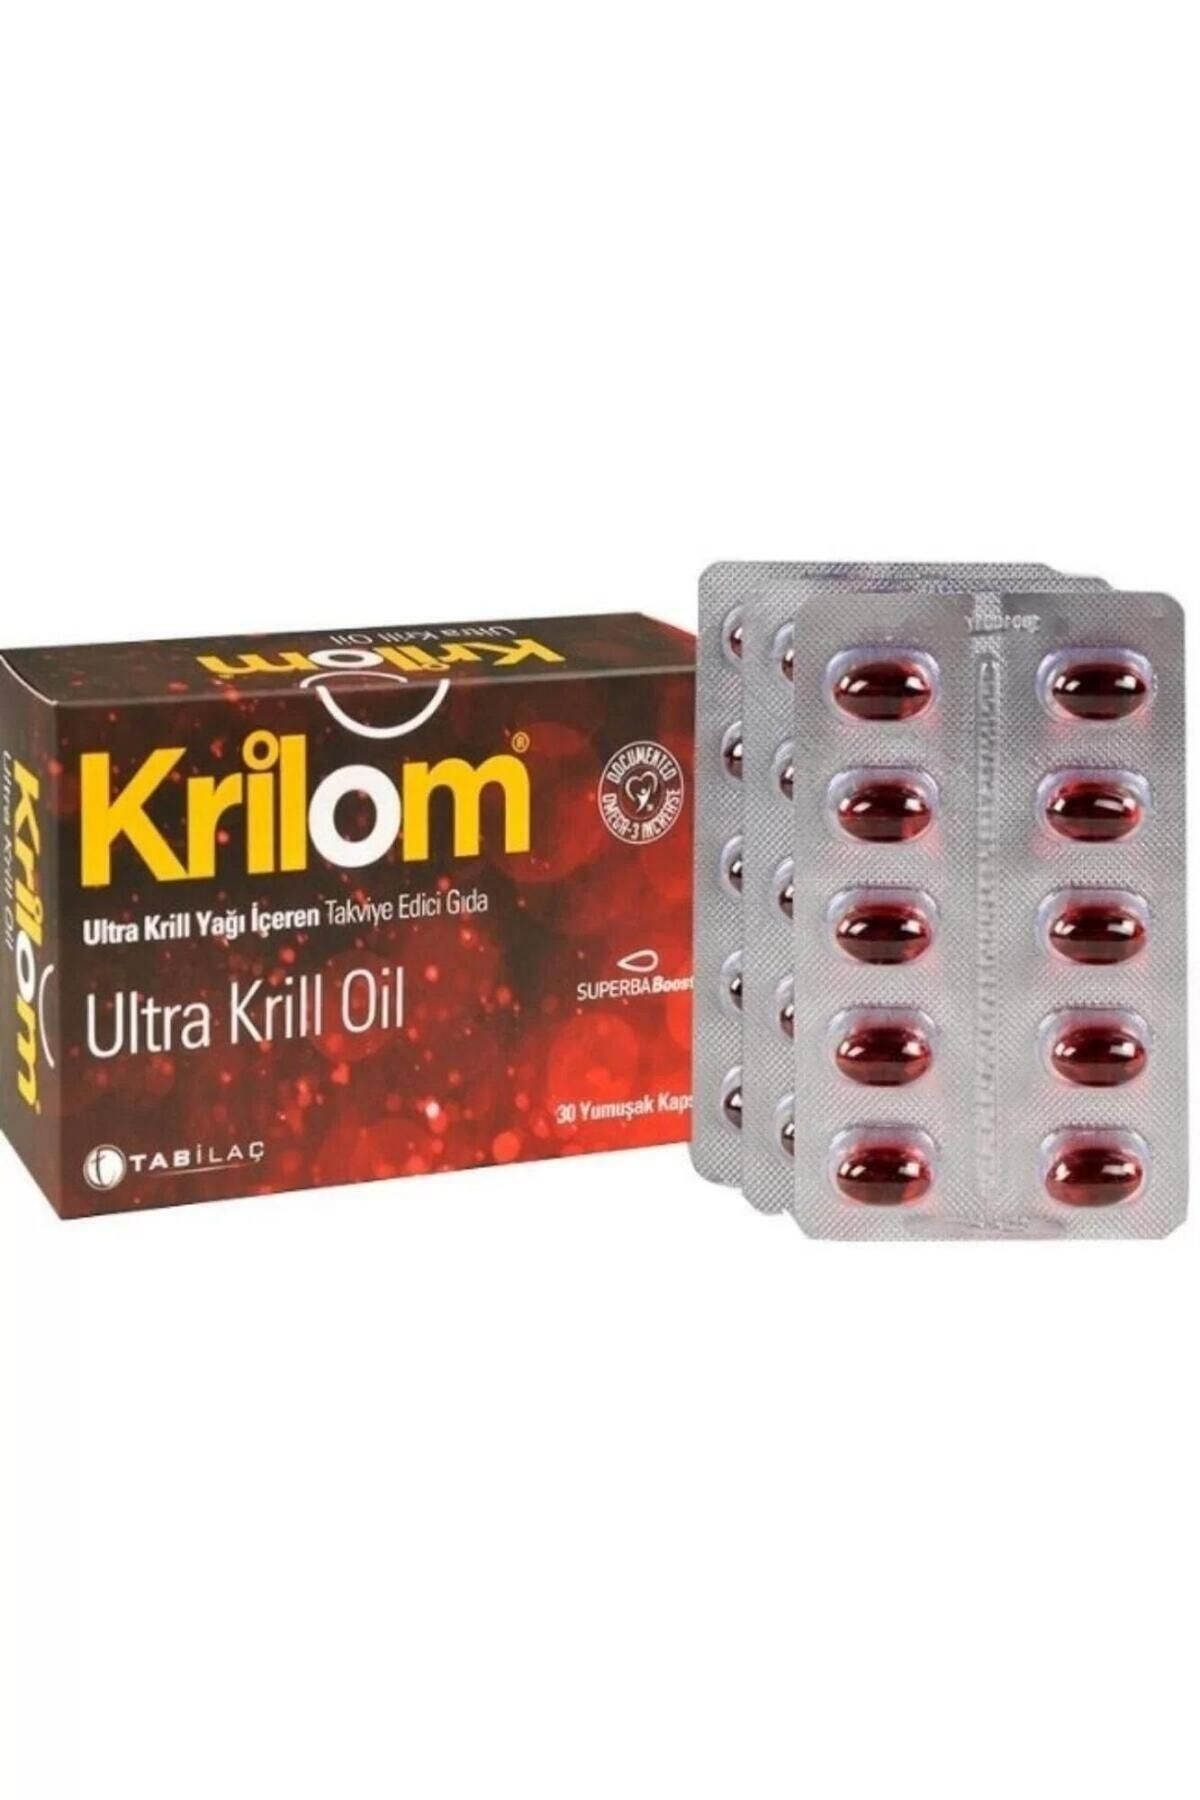 Krilom Ultra Krill Oil Takviye Edici Gıda 30 Yumuş